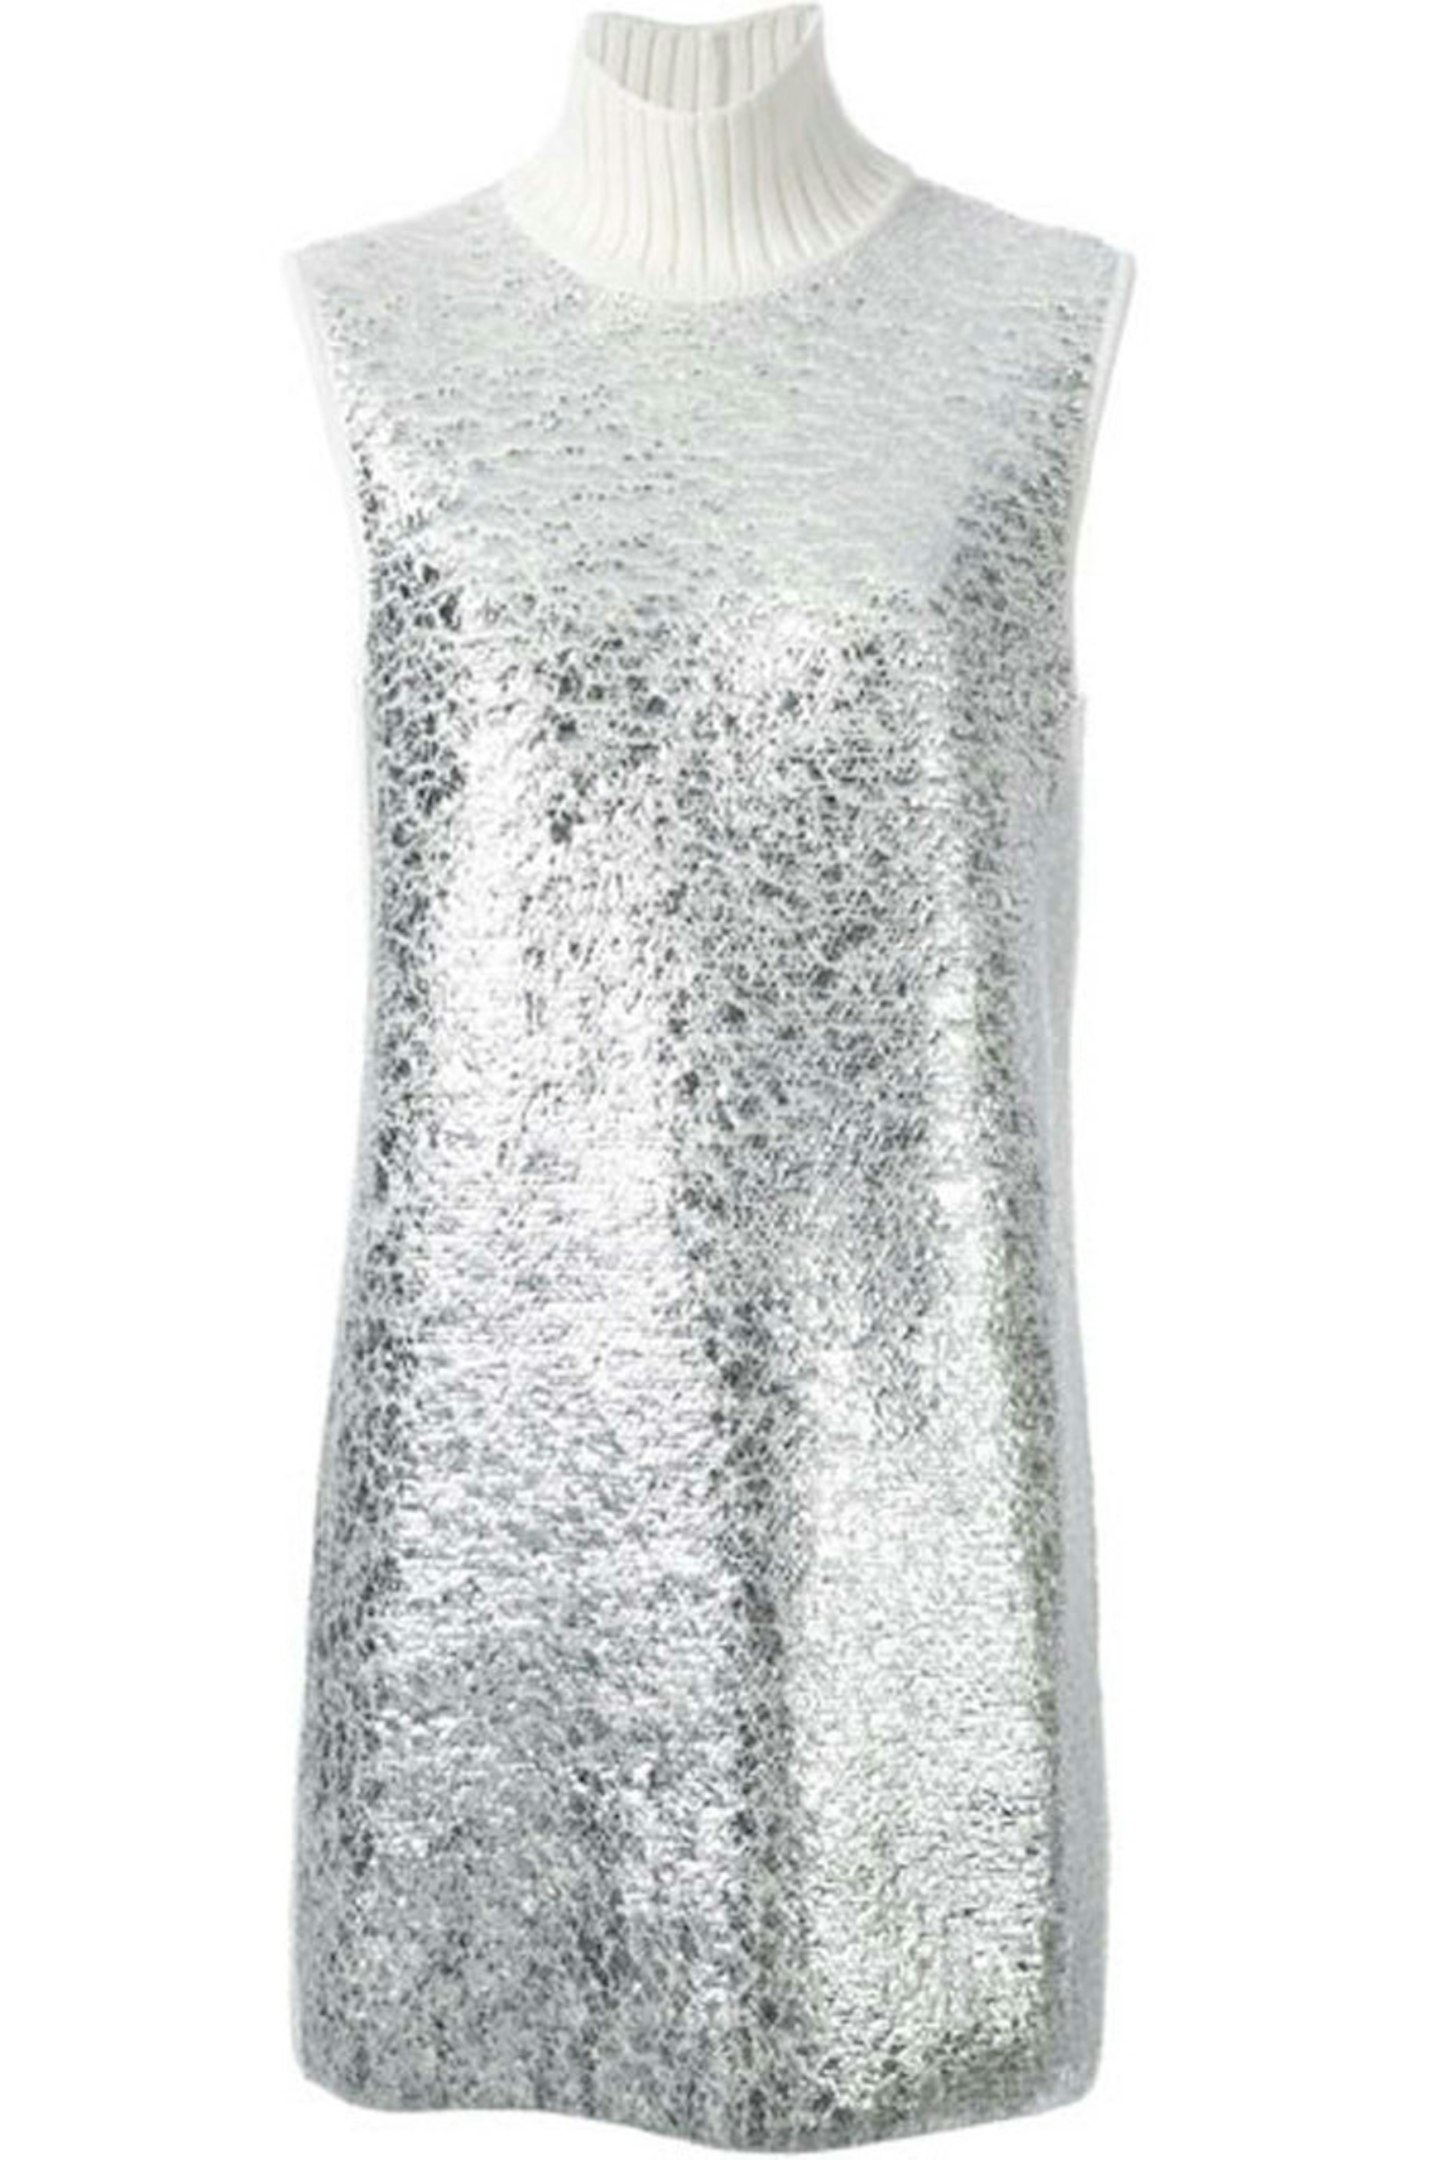 Metallic Kint Dress, £413.61, Iceberg at farfetch.com